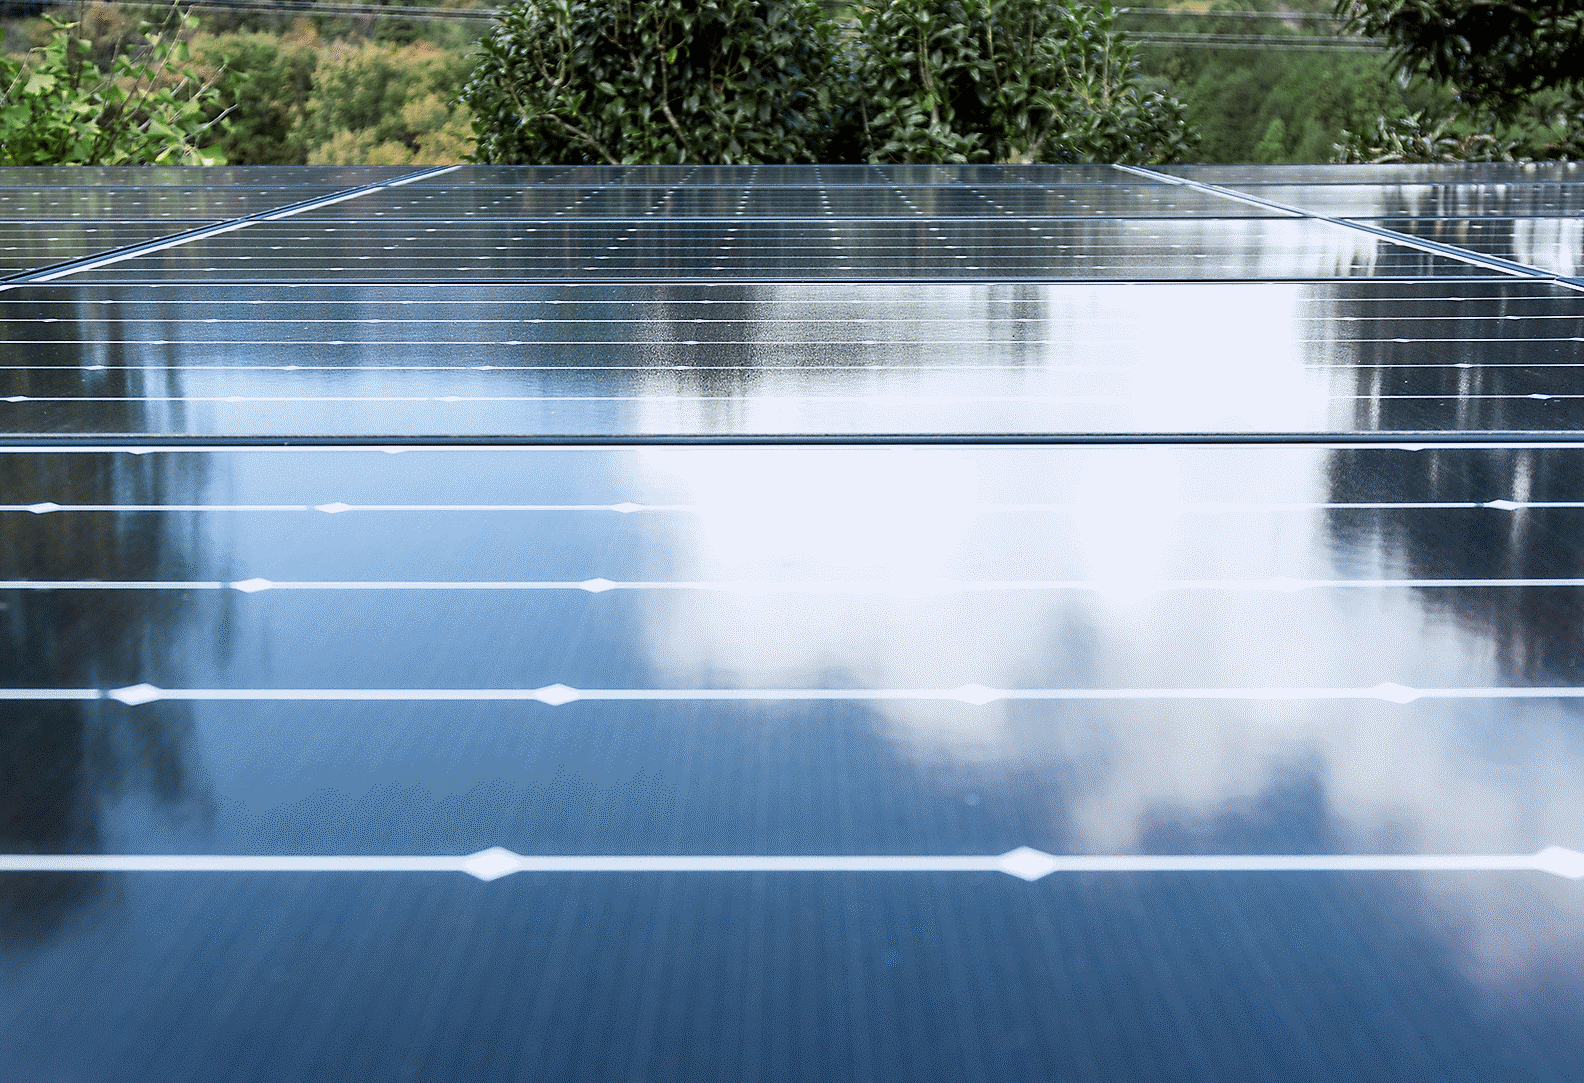 Fotografía que muestra el techo de una fábrica cubierto por paneles solares